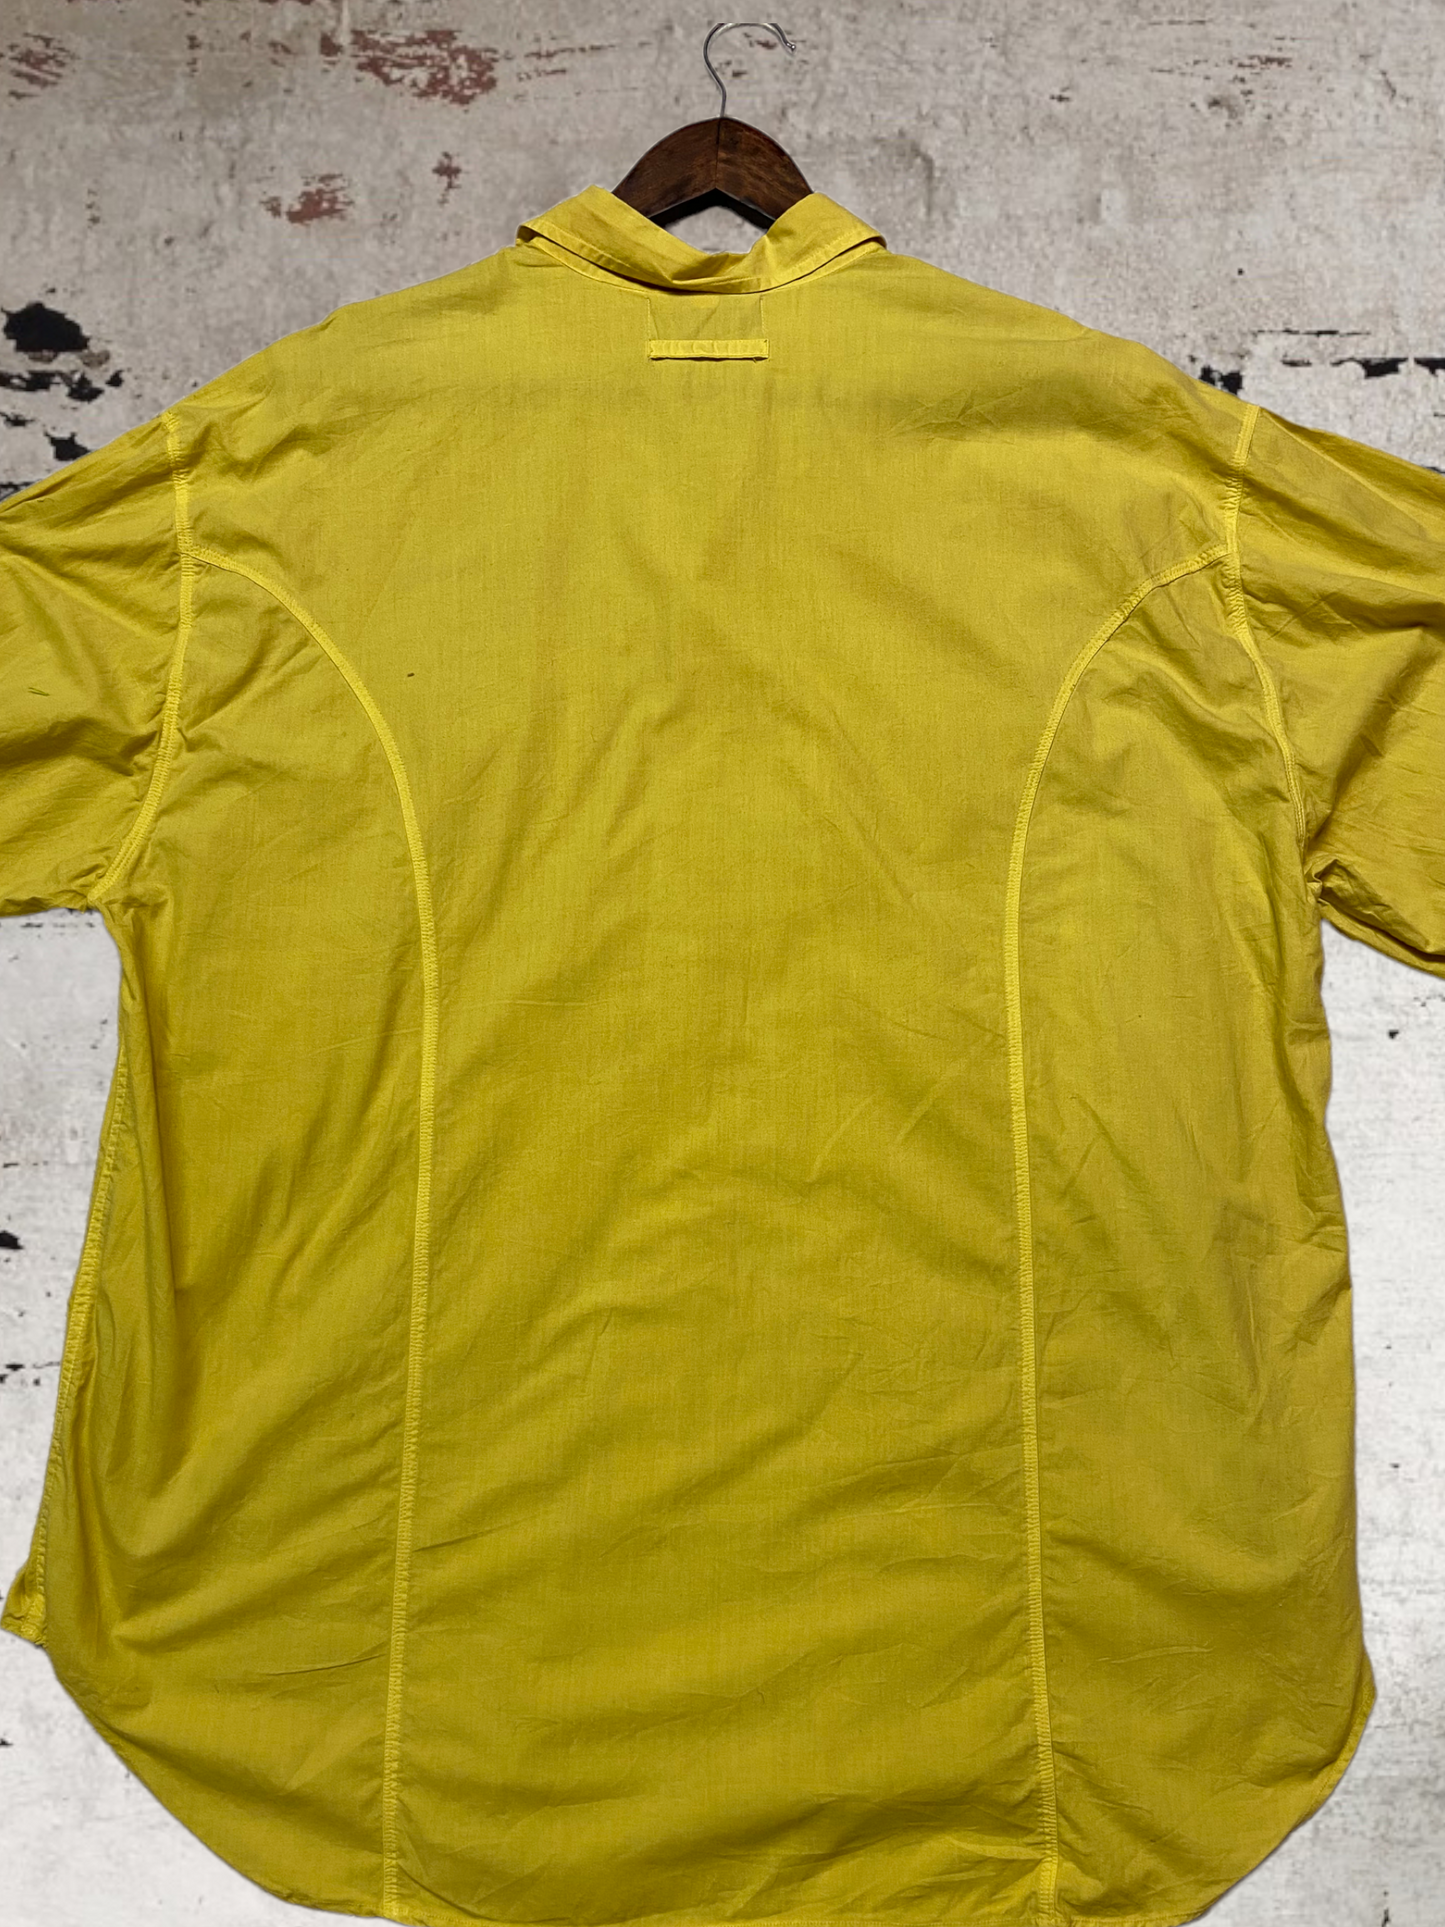 Chesterfield Shirt Size XL